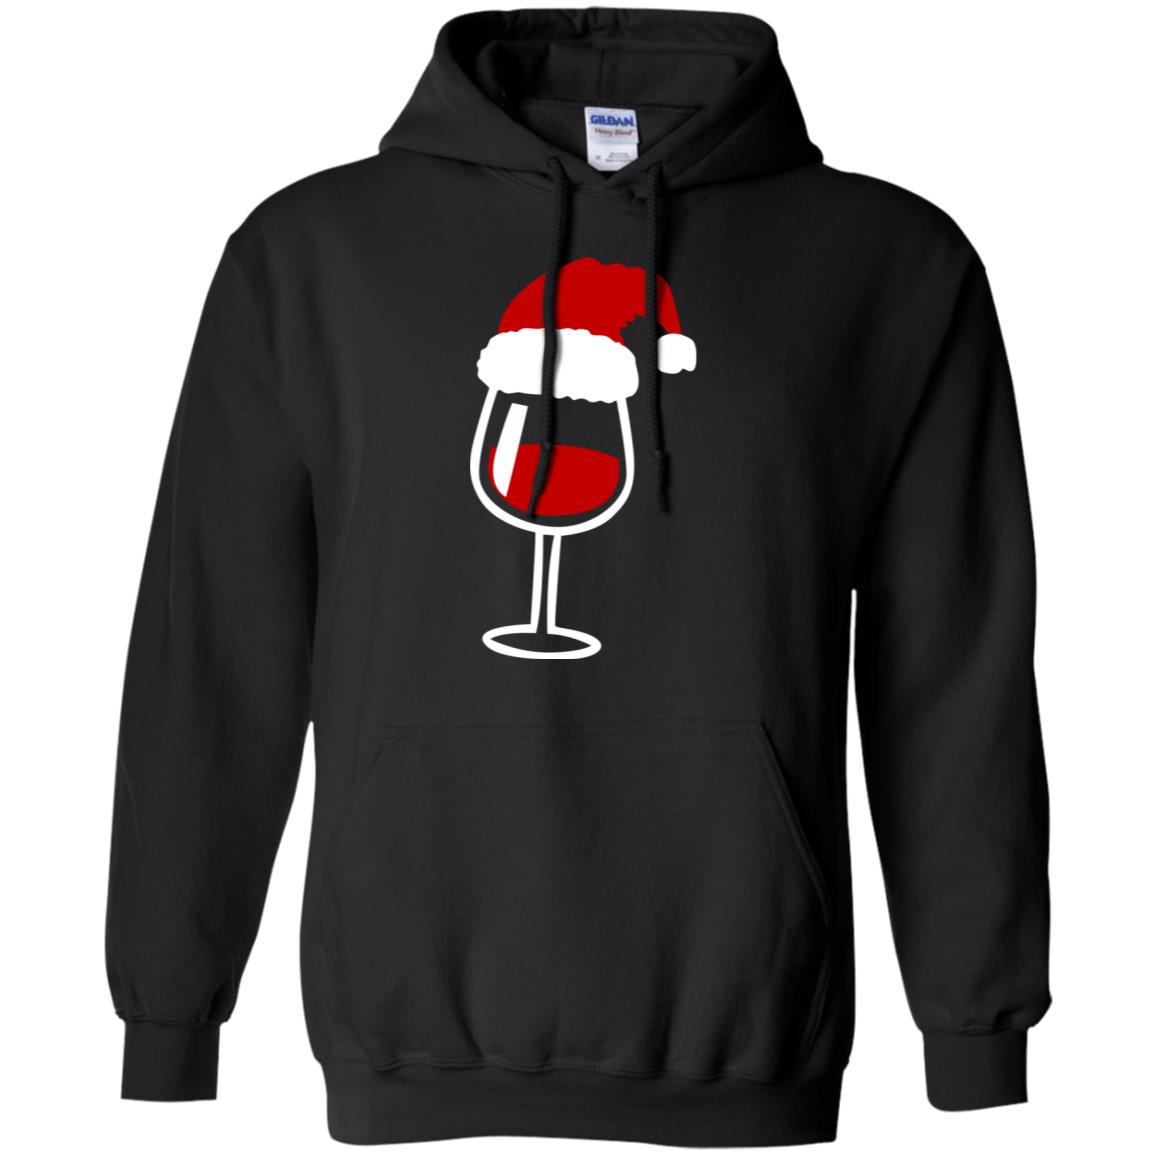 Twinkle Red Wine Glass Santa Hat X-mas Gift ShirtG185 Gildan Pullover Hoodie 8 oz.